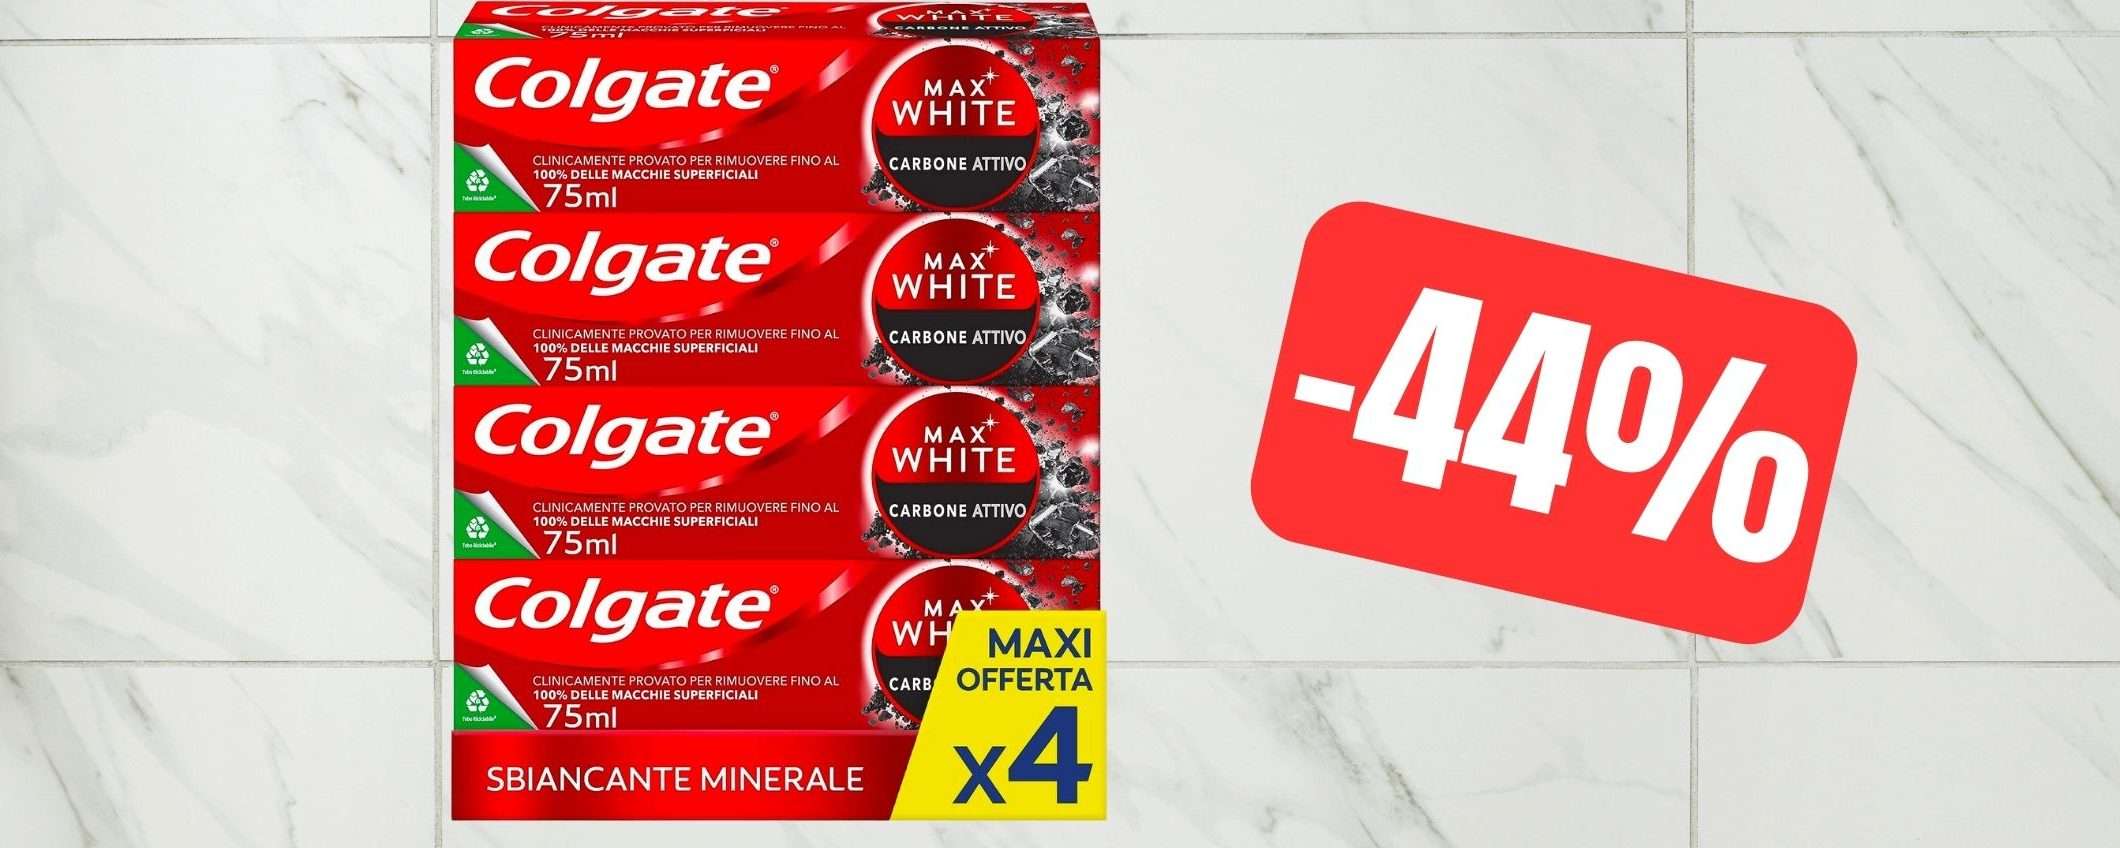 Dentifricio sbiancante Colgate Max White a PREZZO SCORTA su Amazon (-44%)